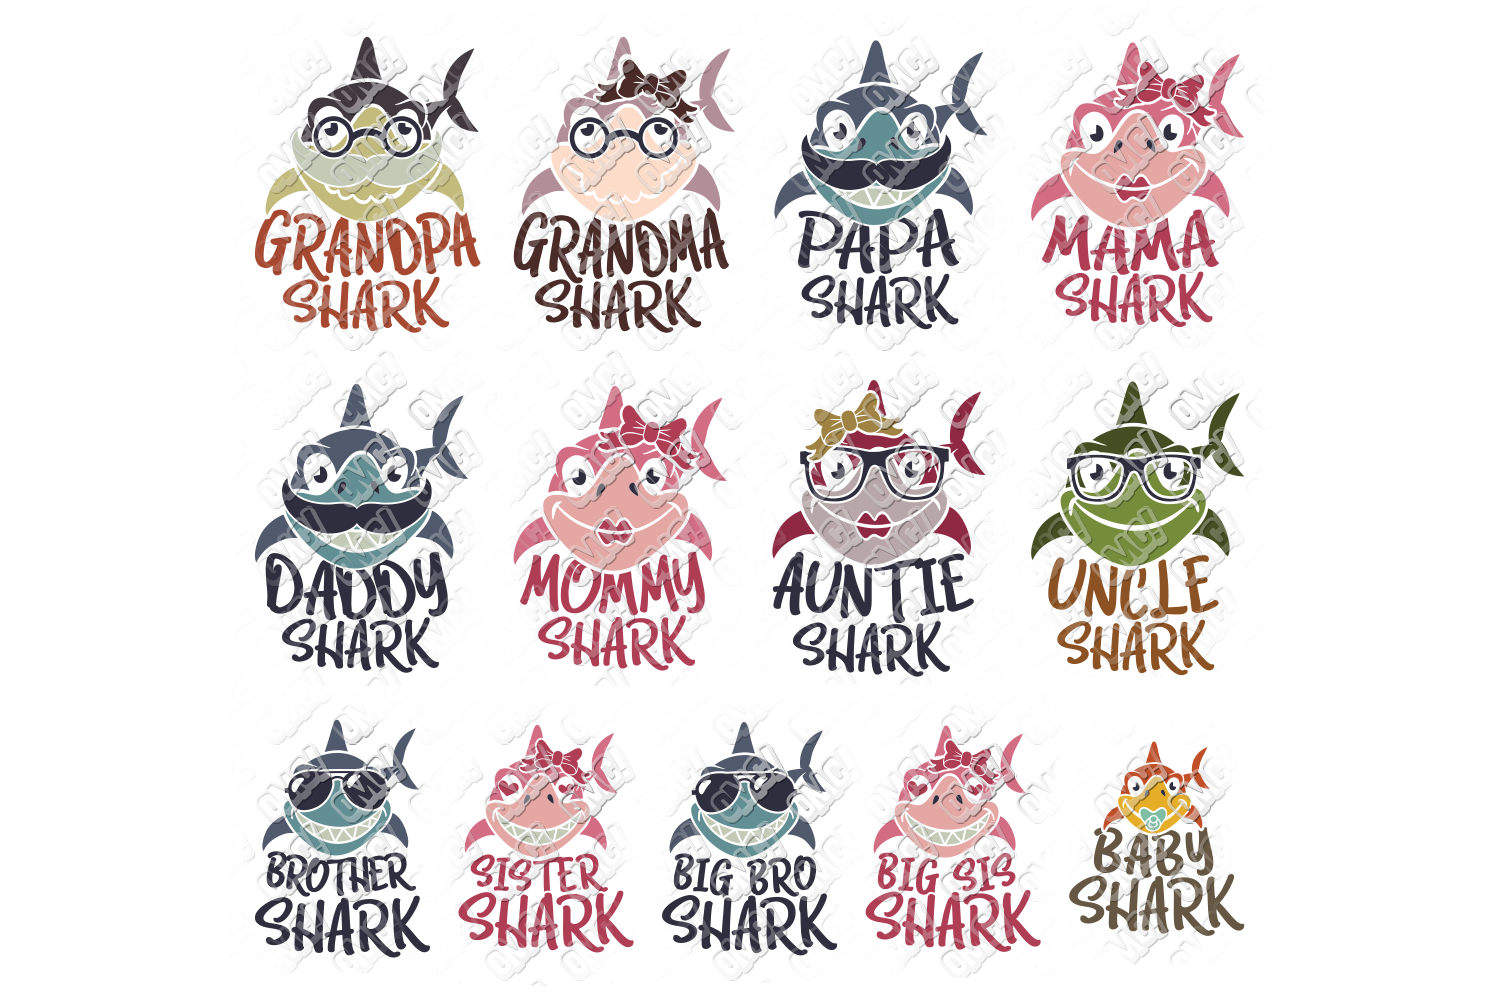 Shark Family SVG Bundle in SVG, DXF, PNG, EPS, JPEG